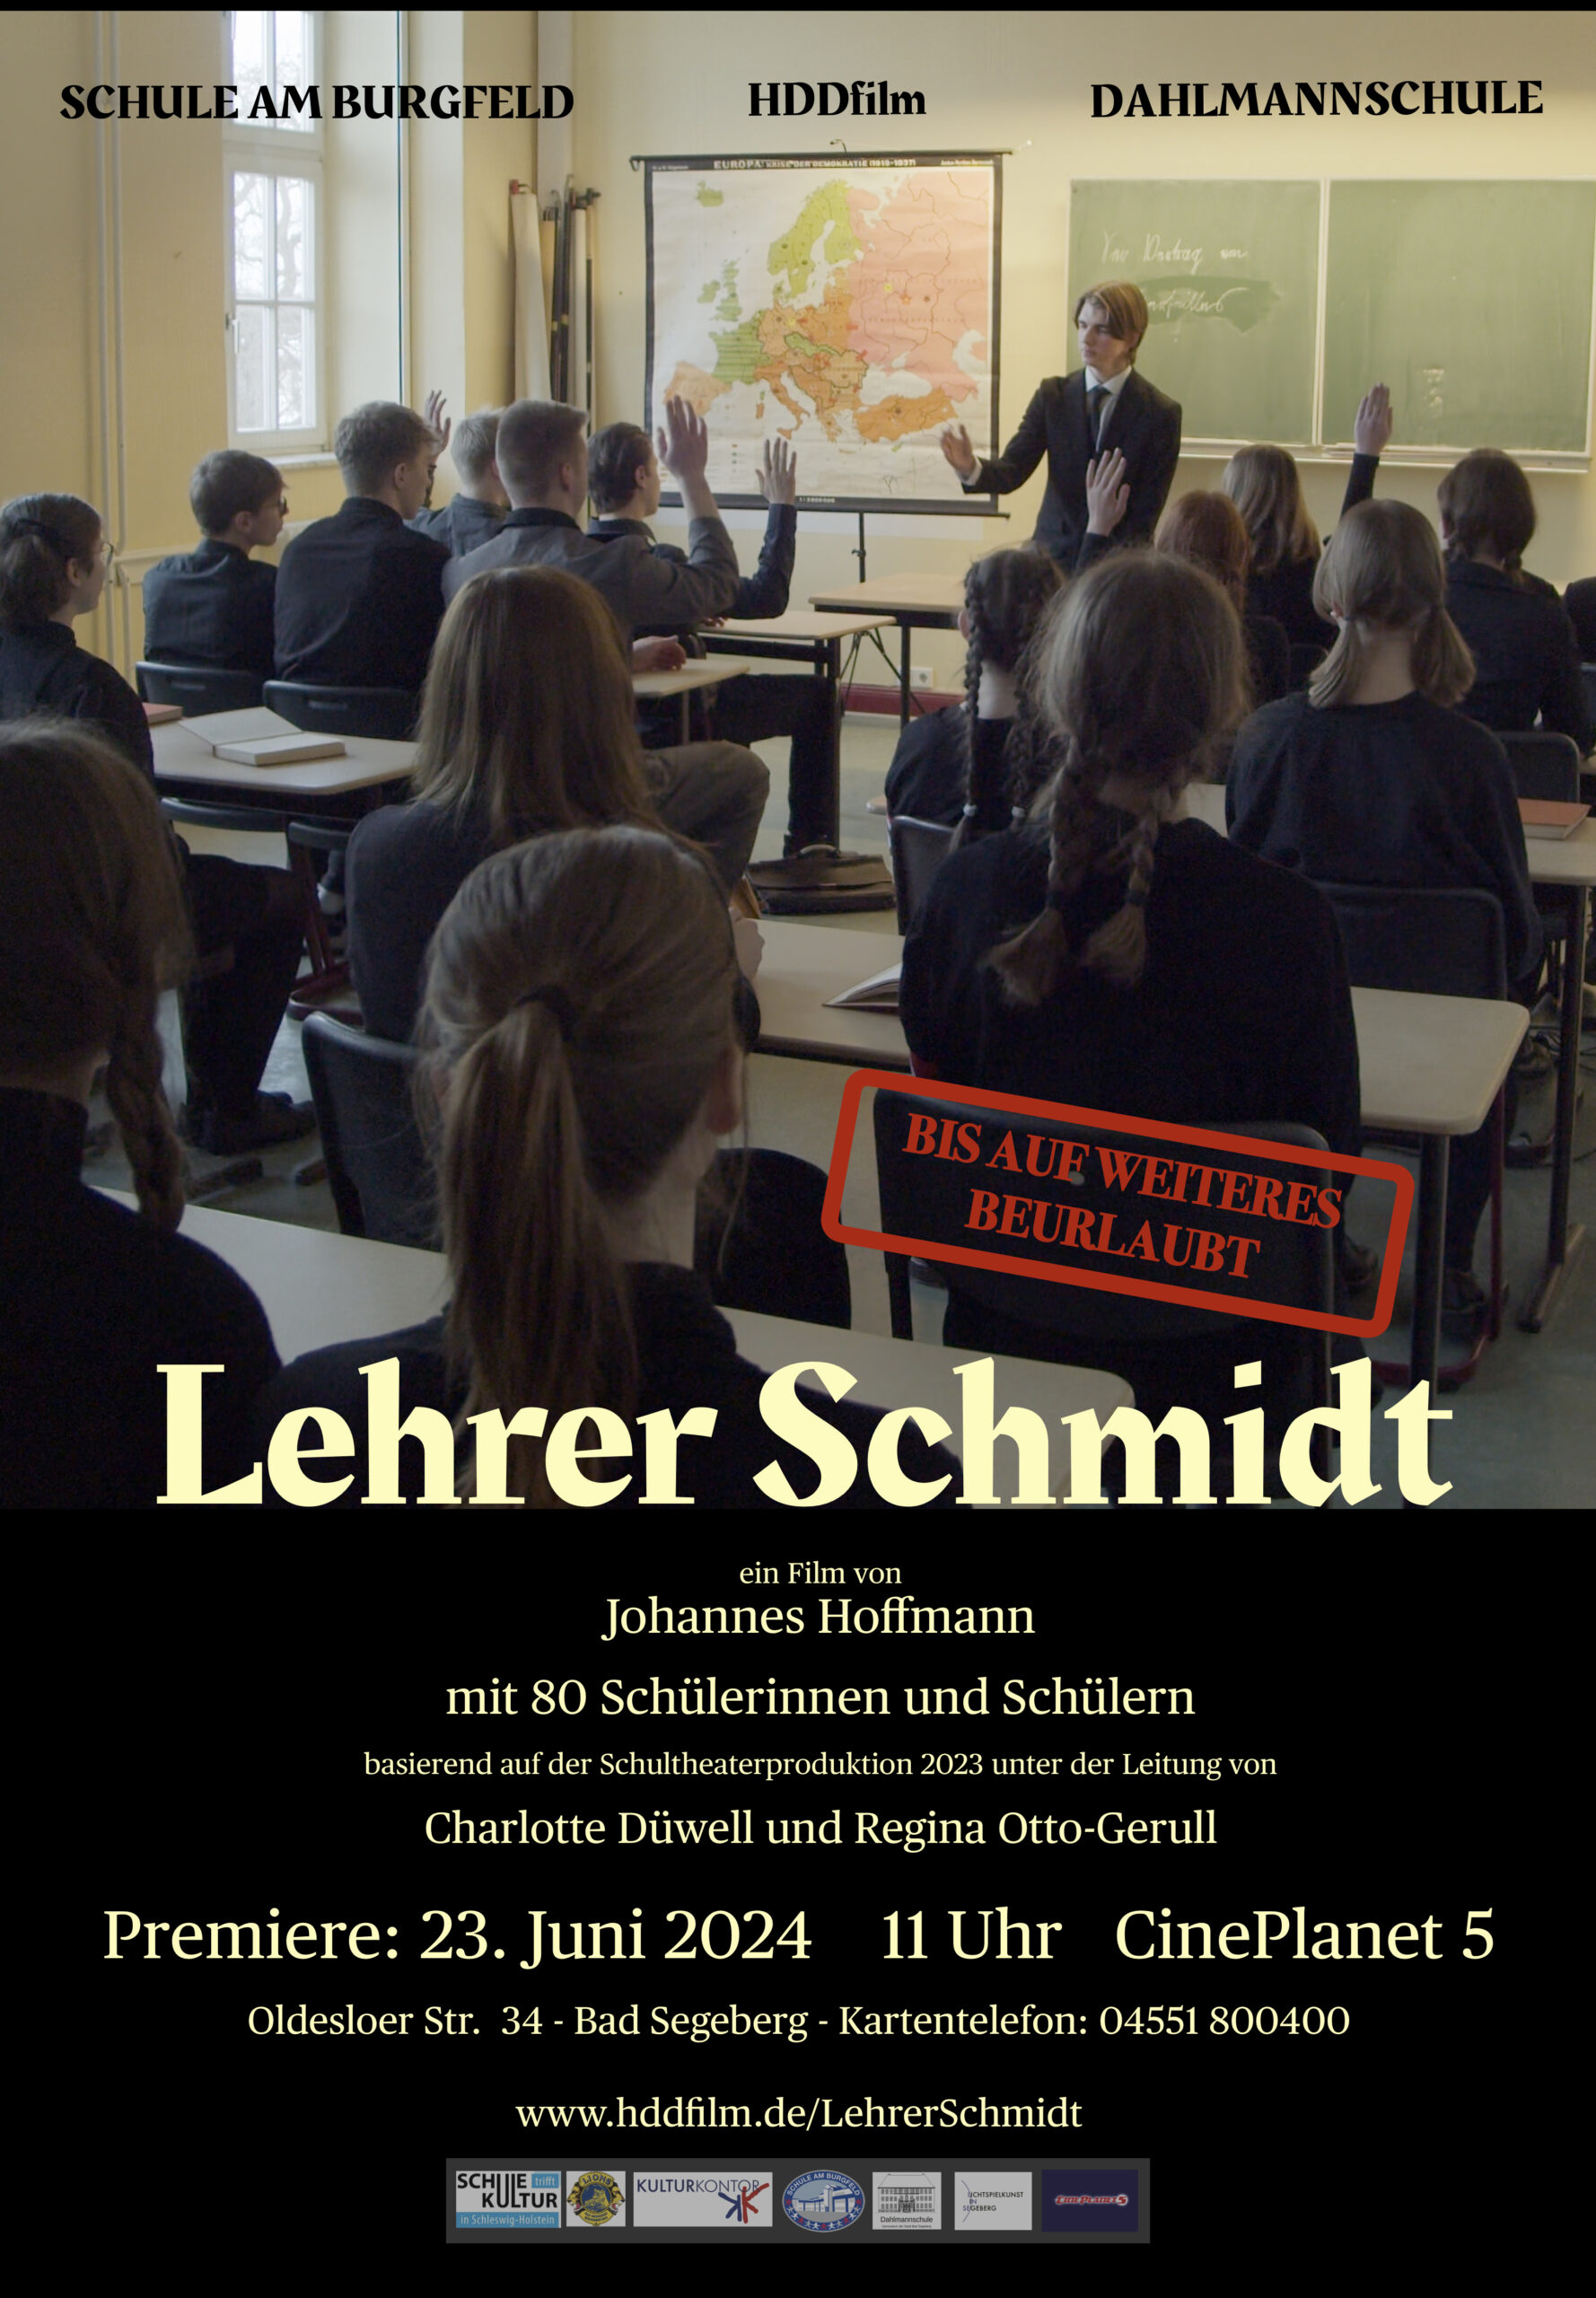 Lehrer Schmidt im CinePlanet 5